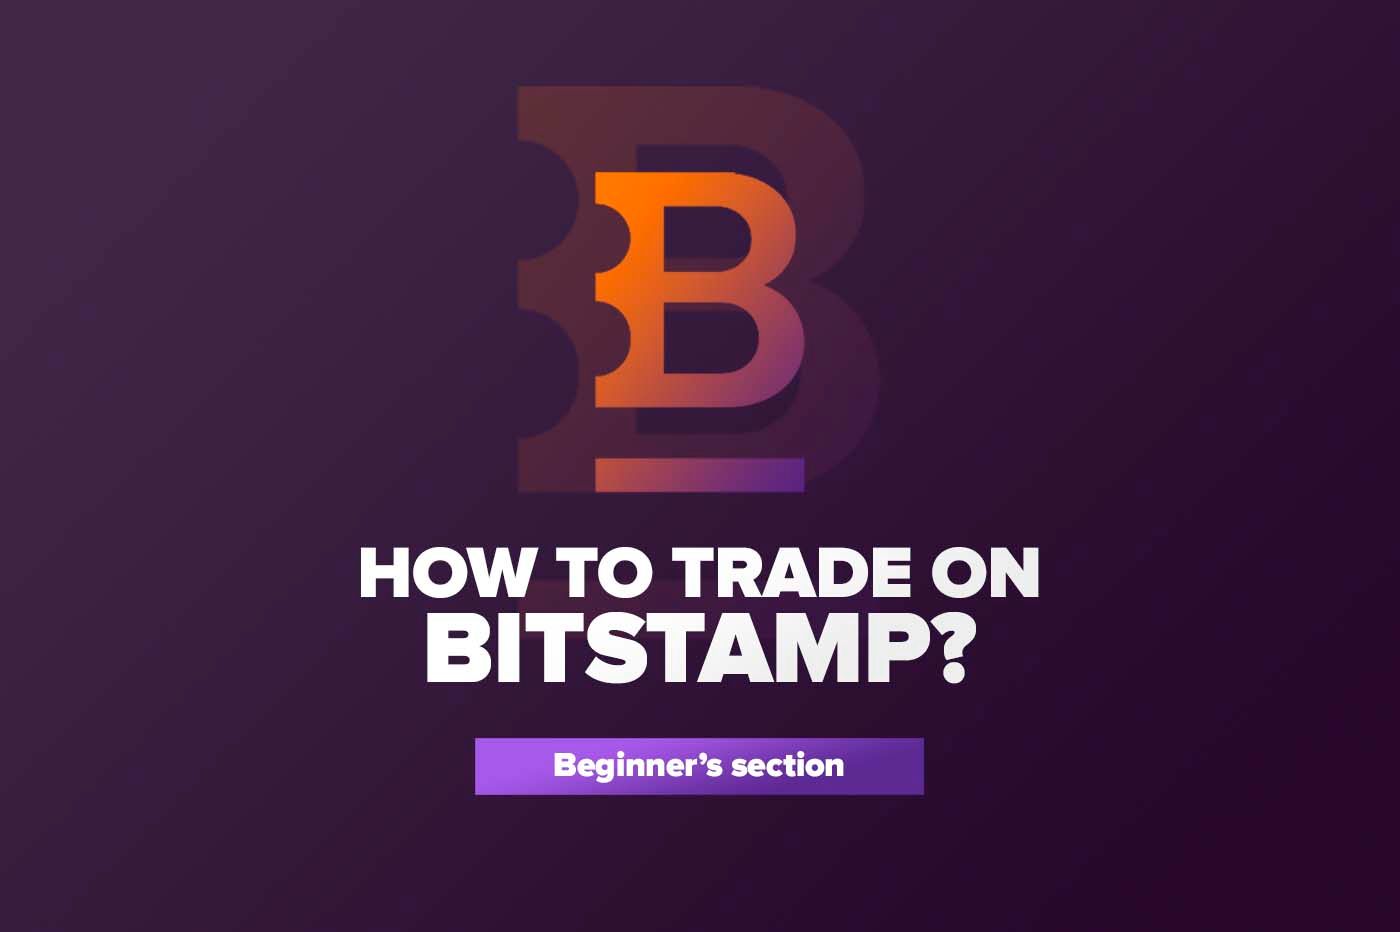 Article Как торговать на BITSTAMP?